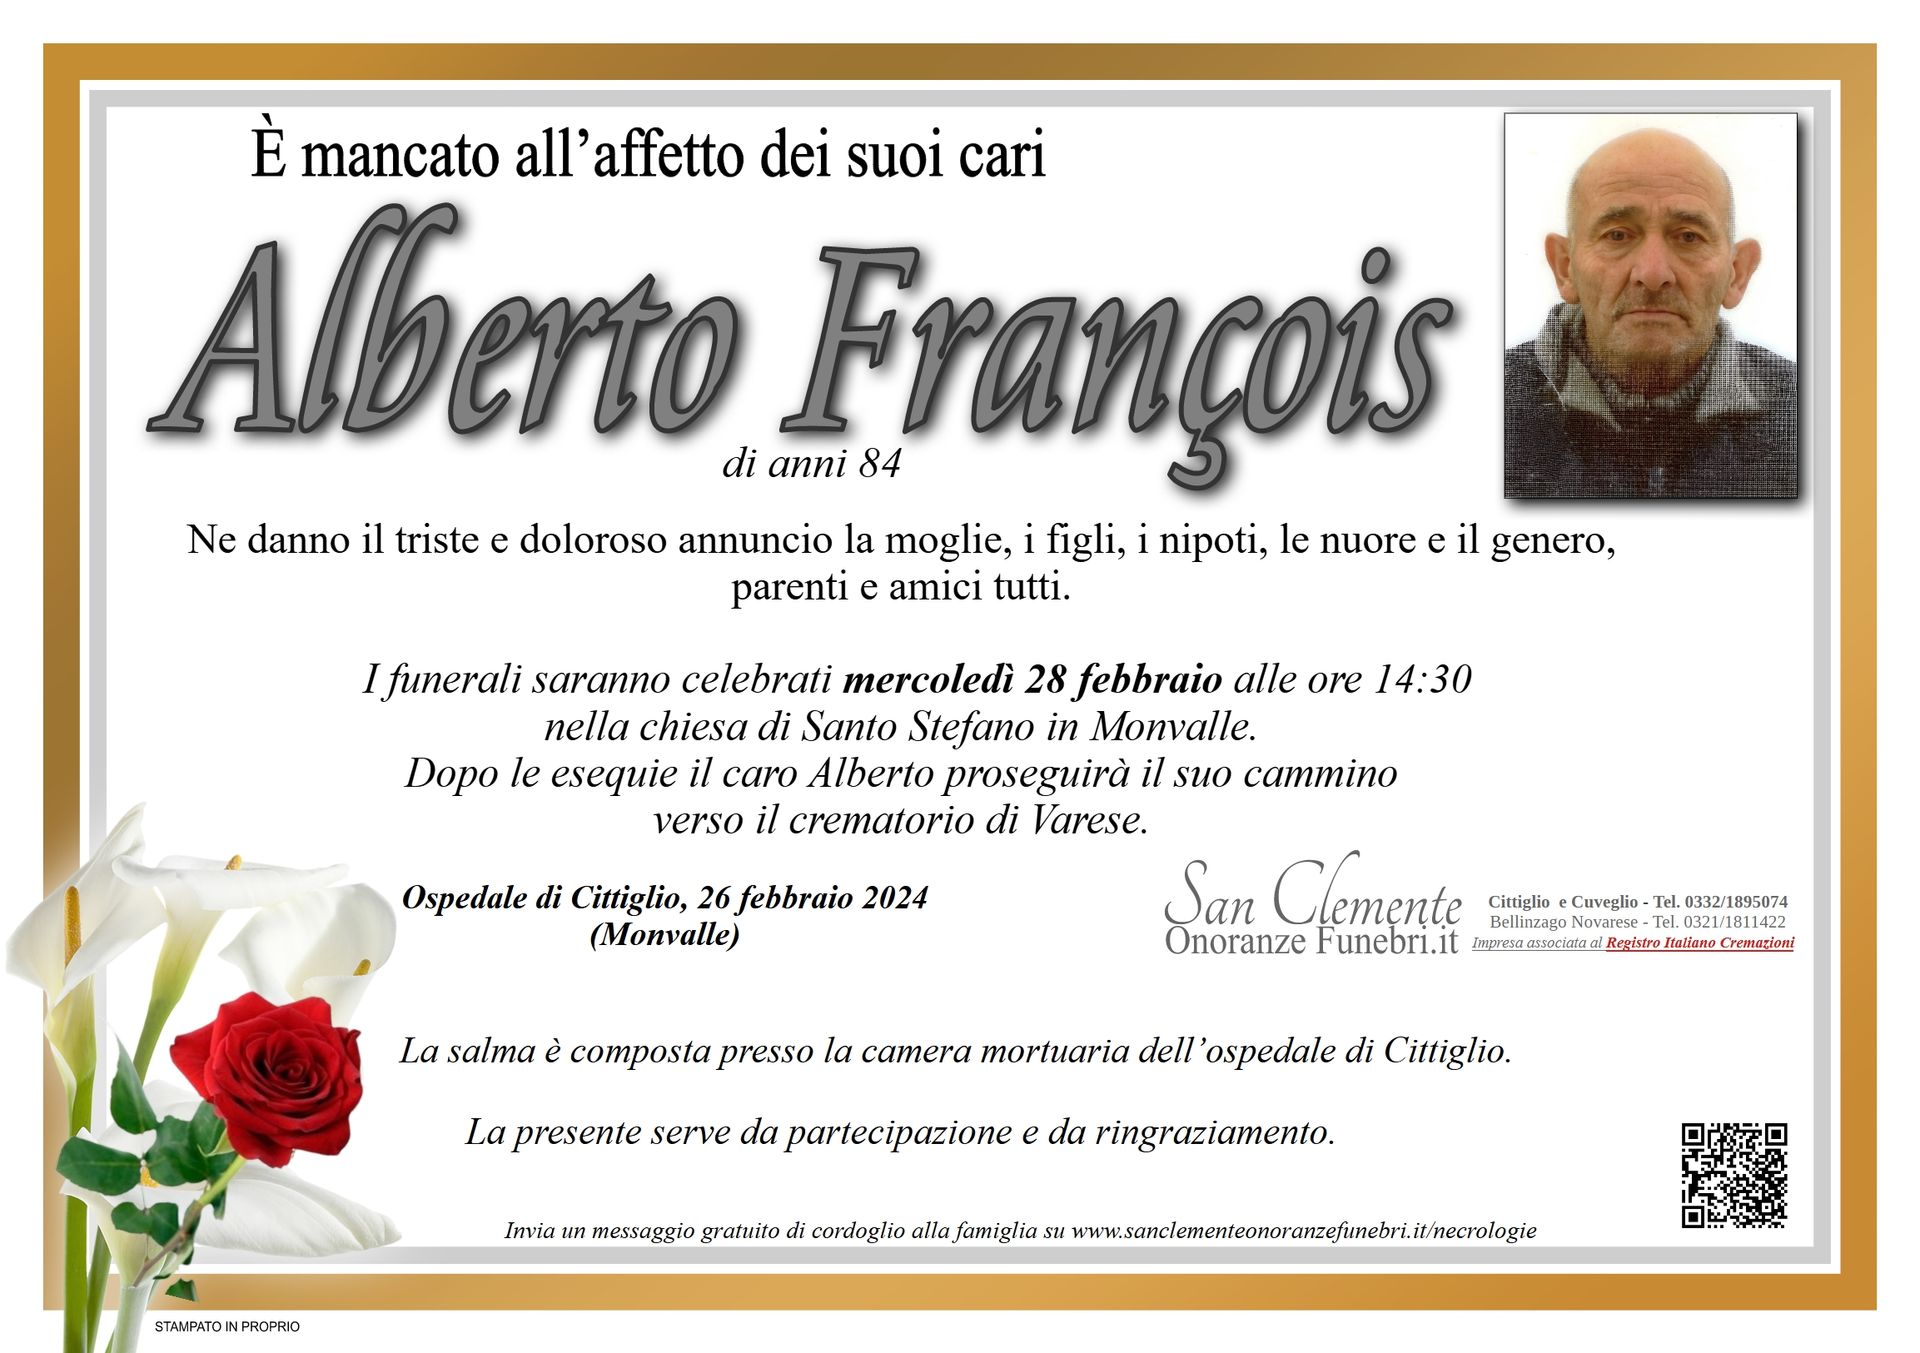 Necrologio François Alberto